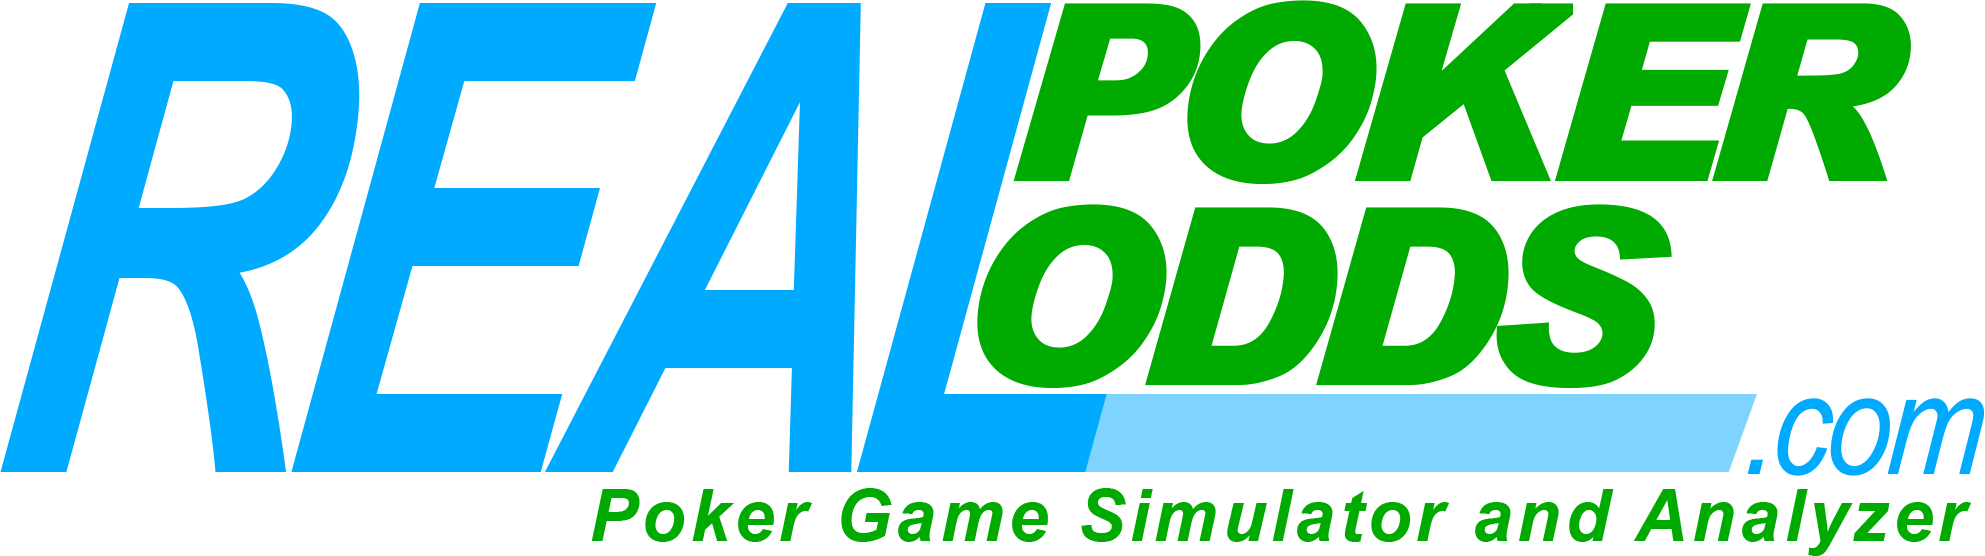 Real Poker Odds Logo